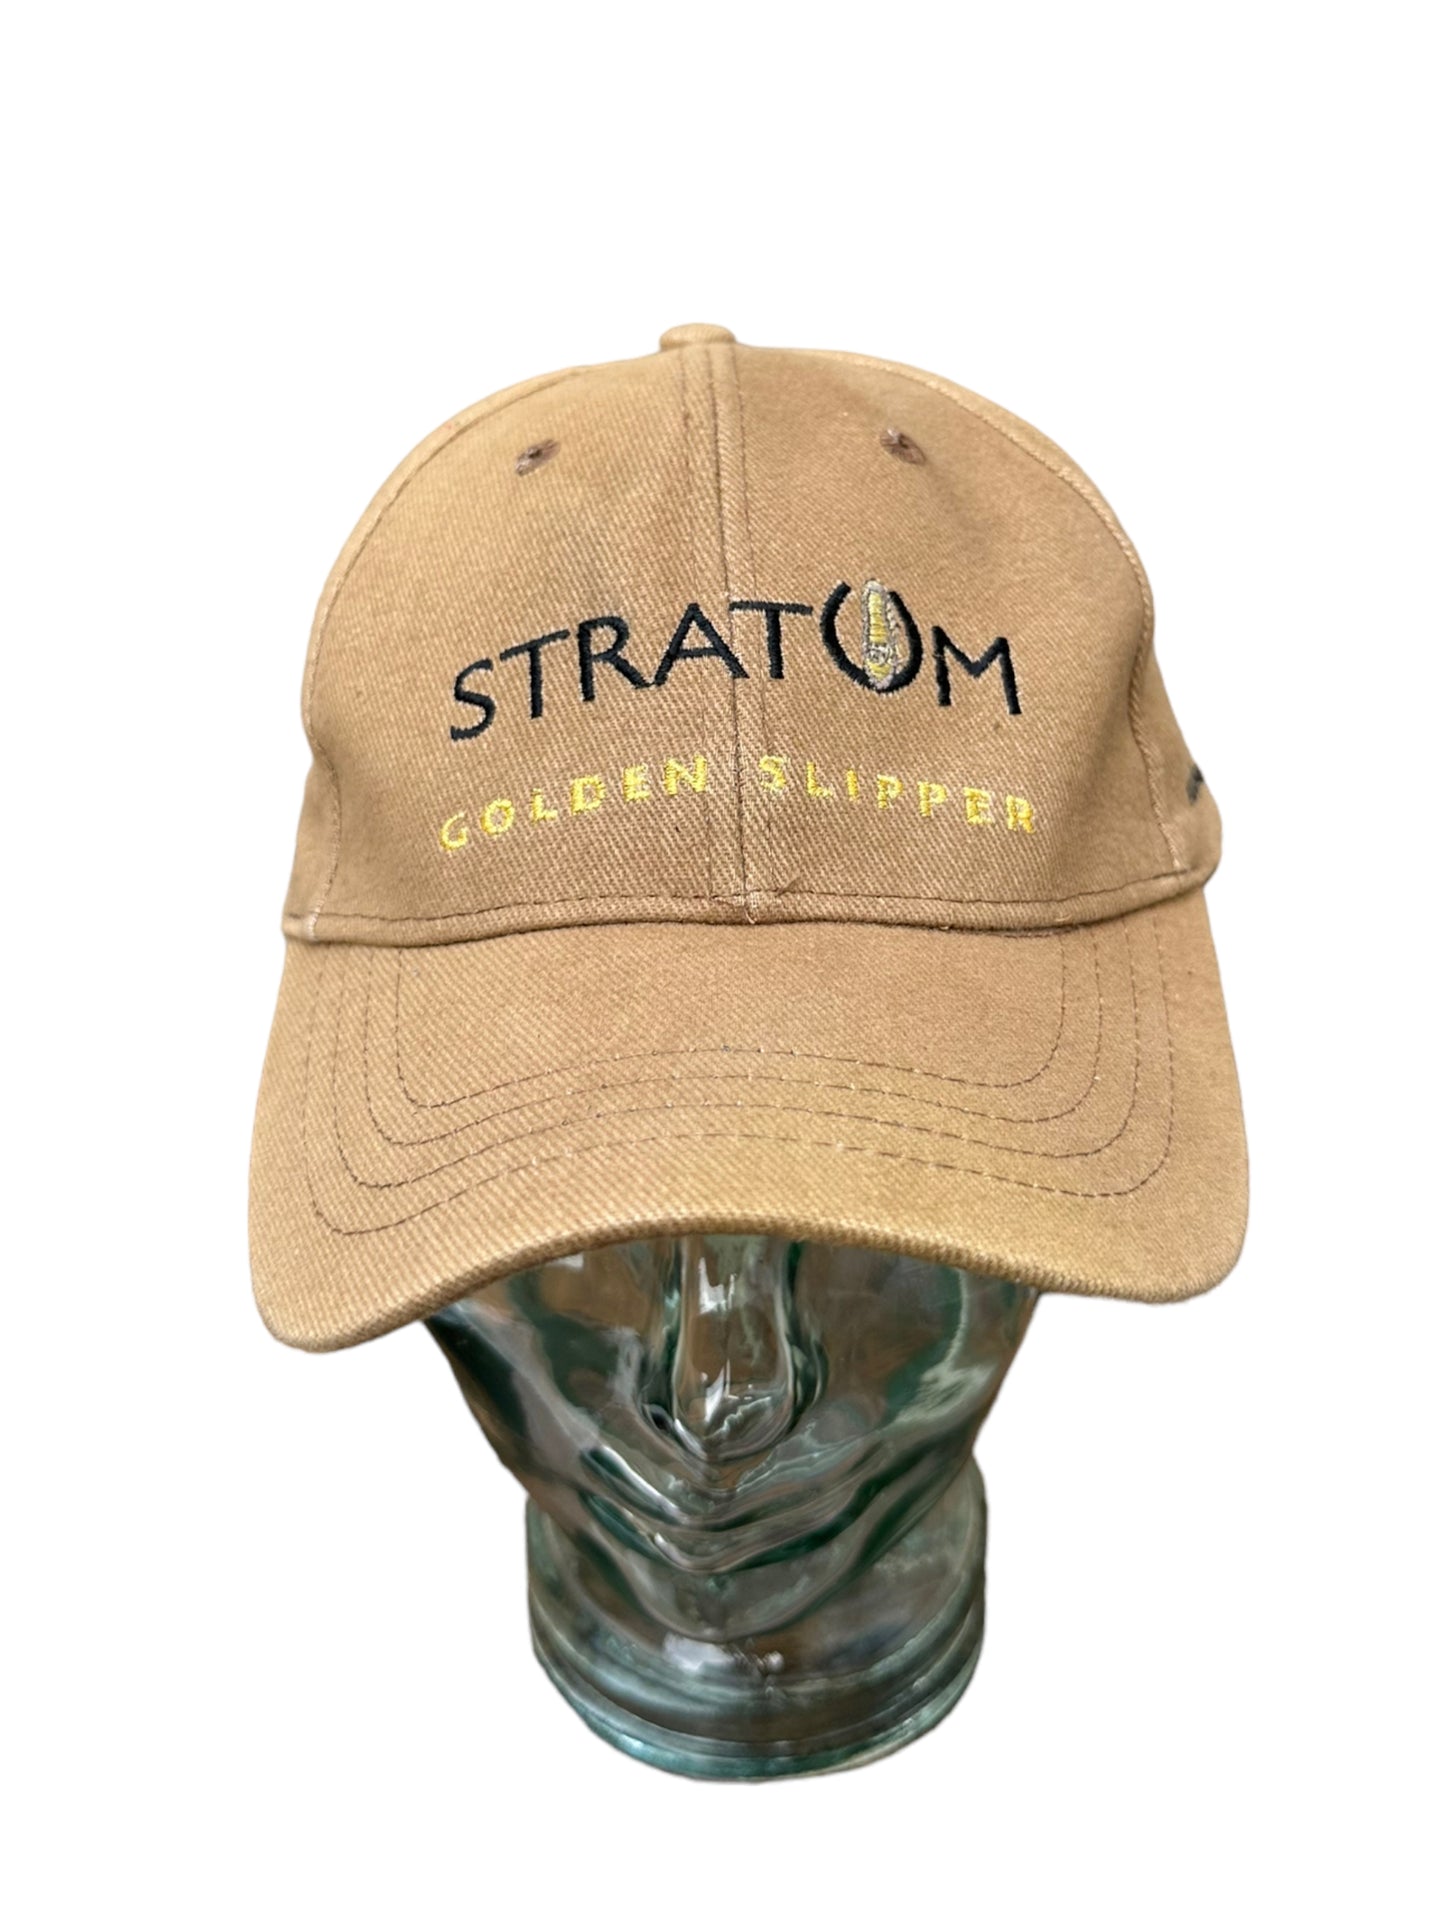 STRATUM GOLDEN SLIPPER WINNER HAT